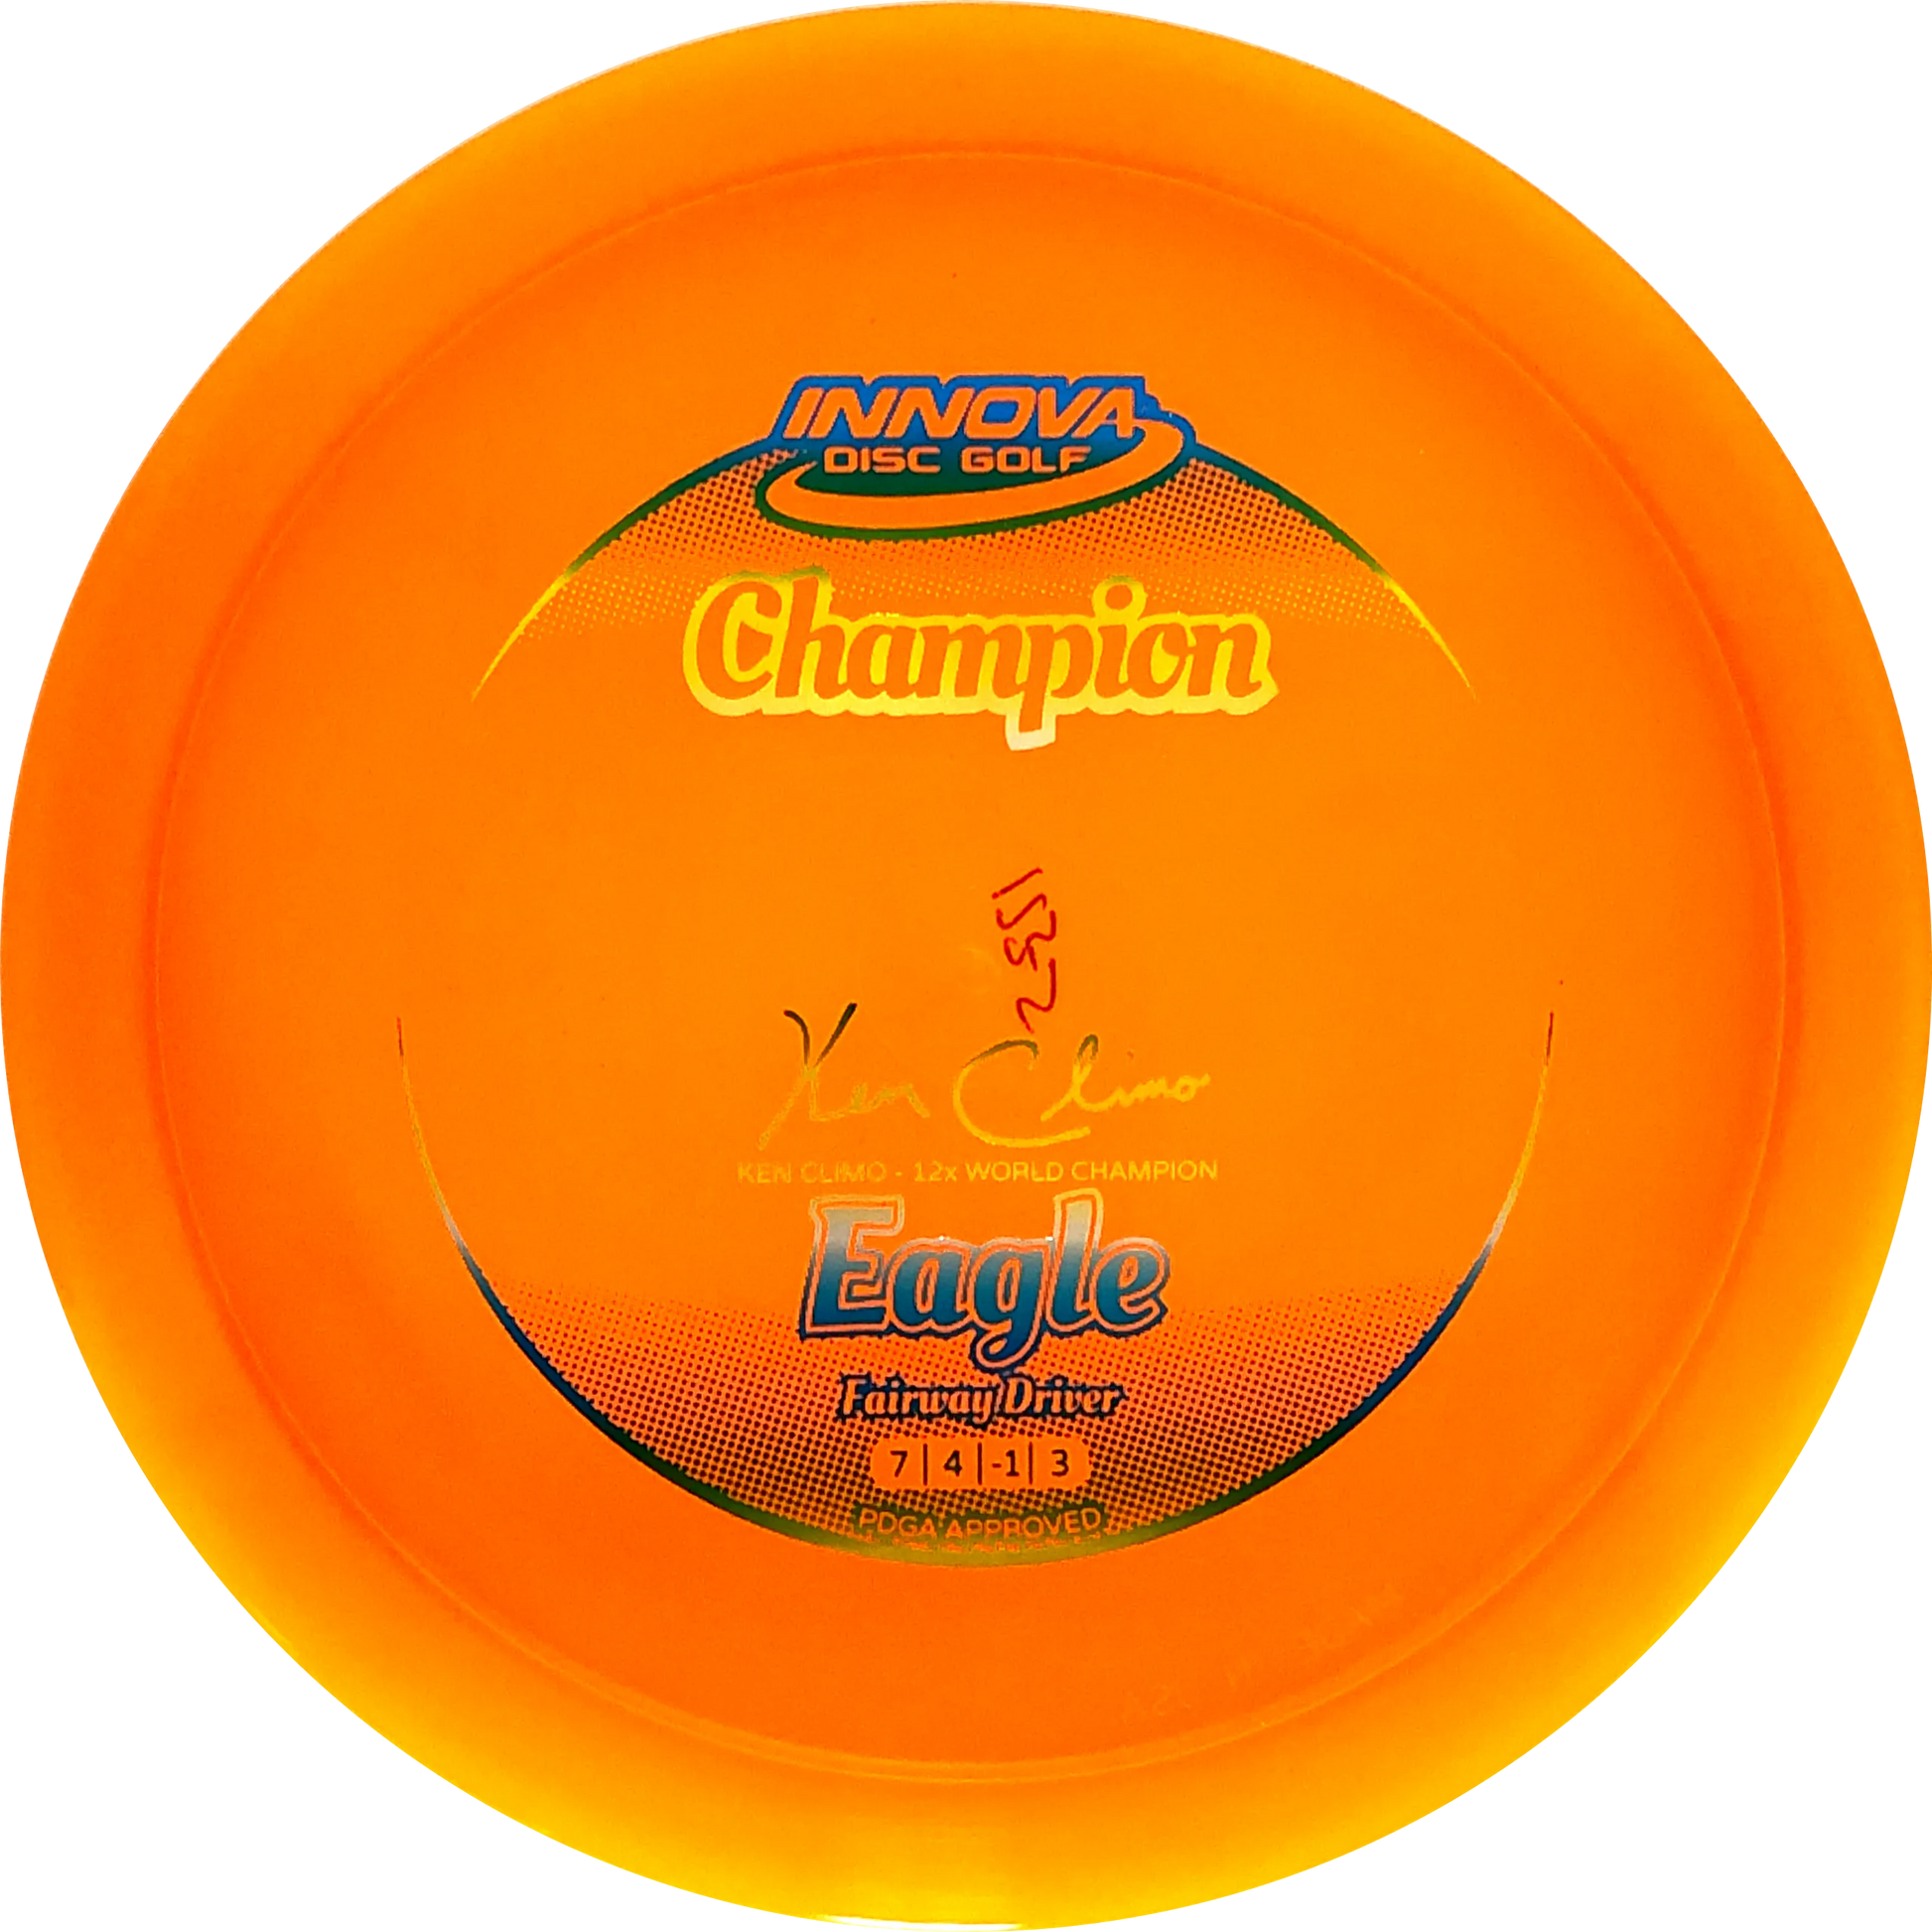 Innova Champion Eagle Legacy